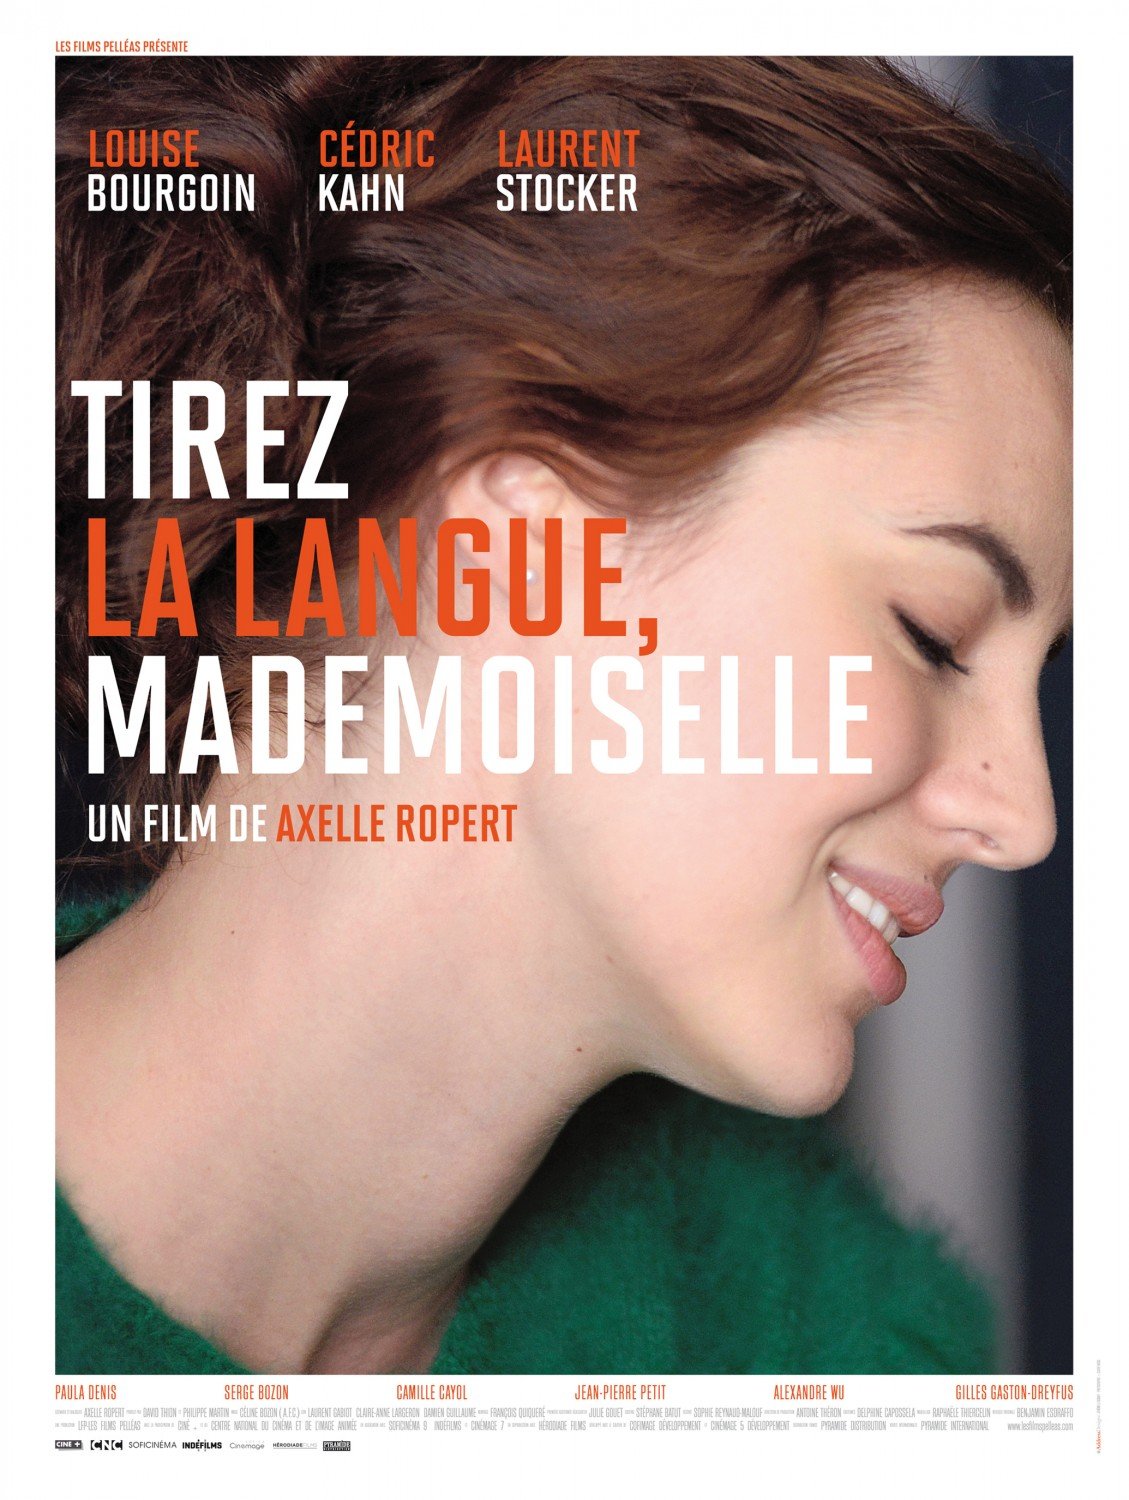 L'affiche du film Tirez la langue, mademoiselle